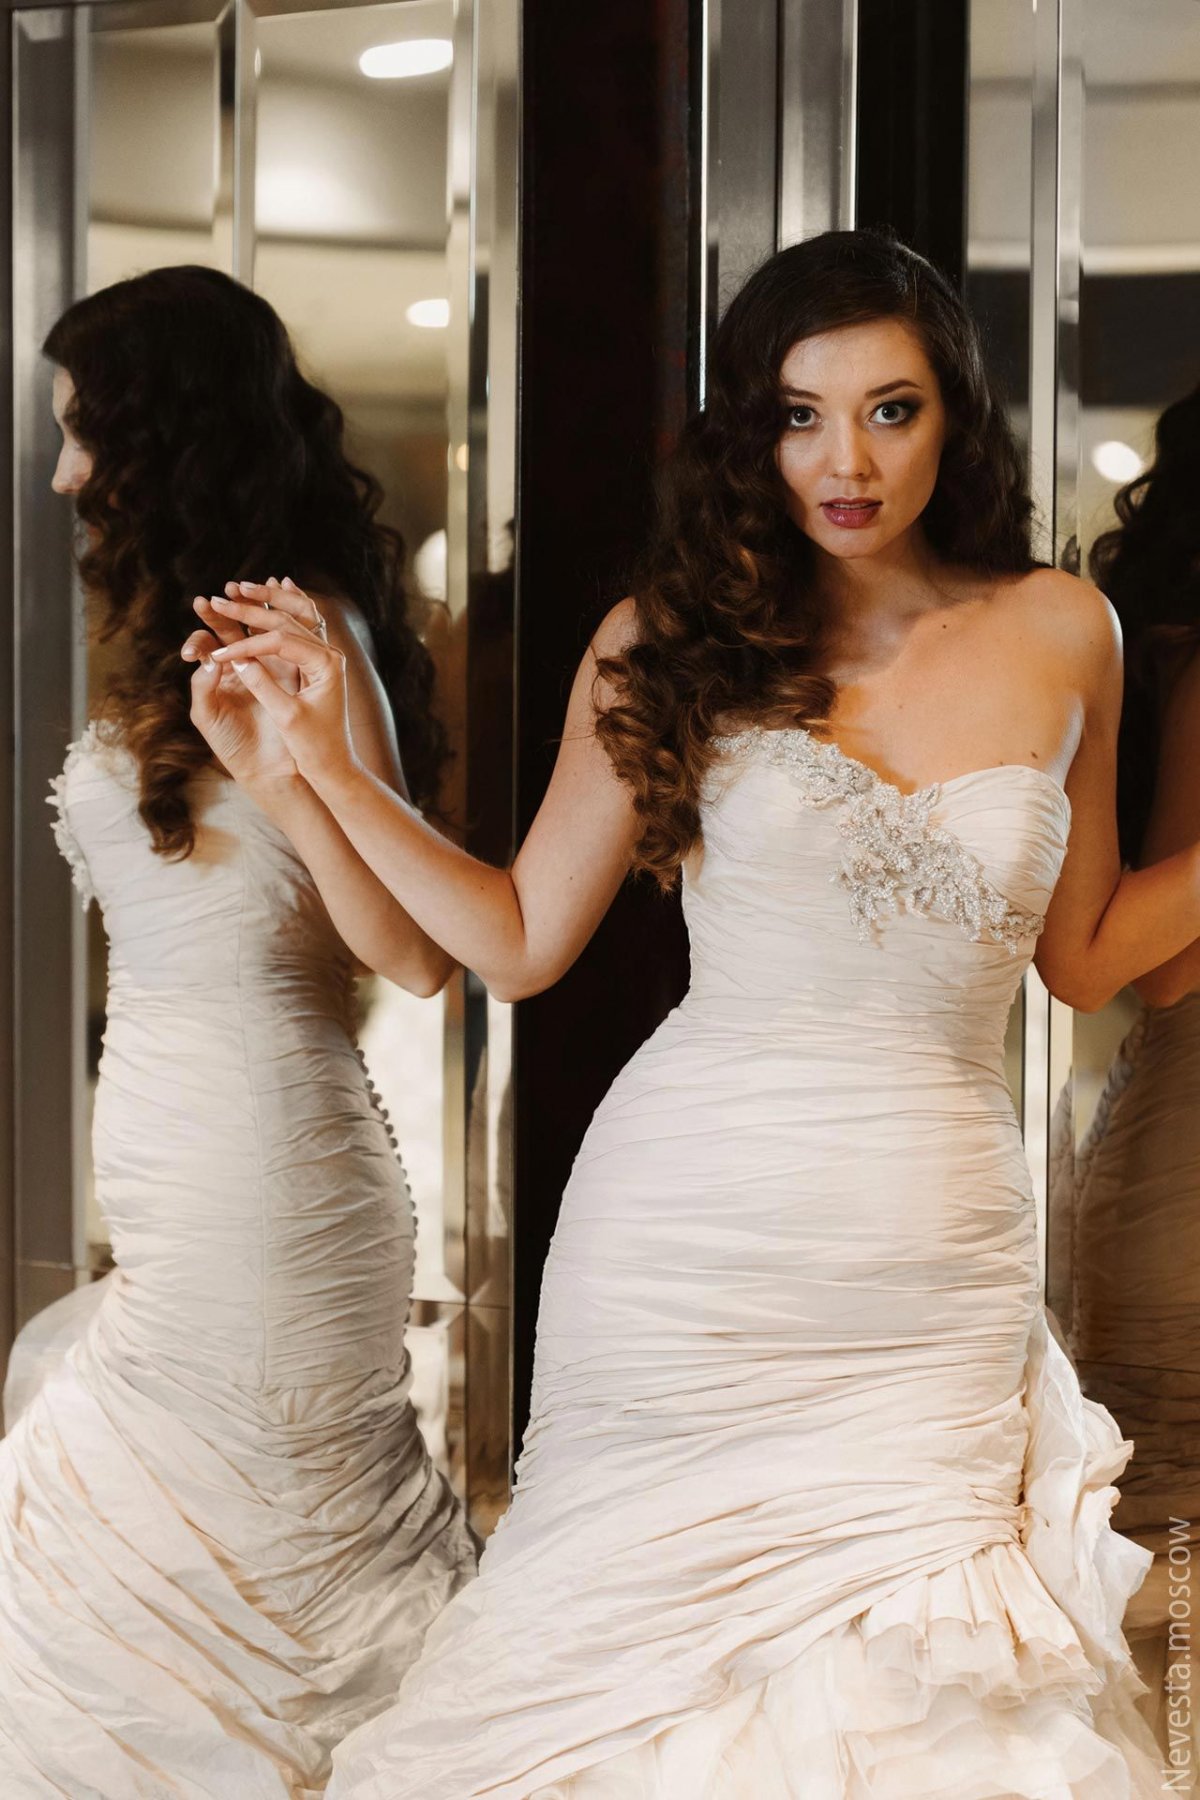 Рената Байкова примеряет свадебное платье фото 11